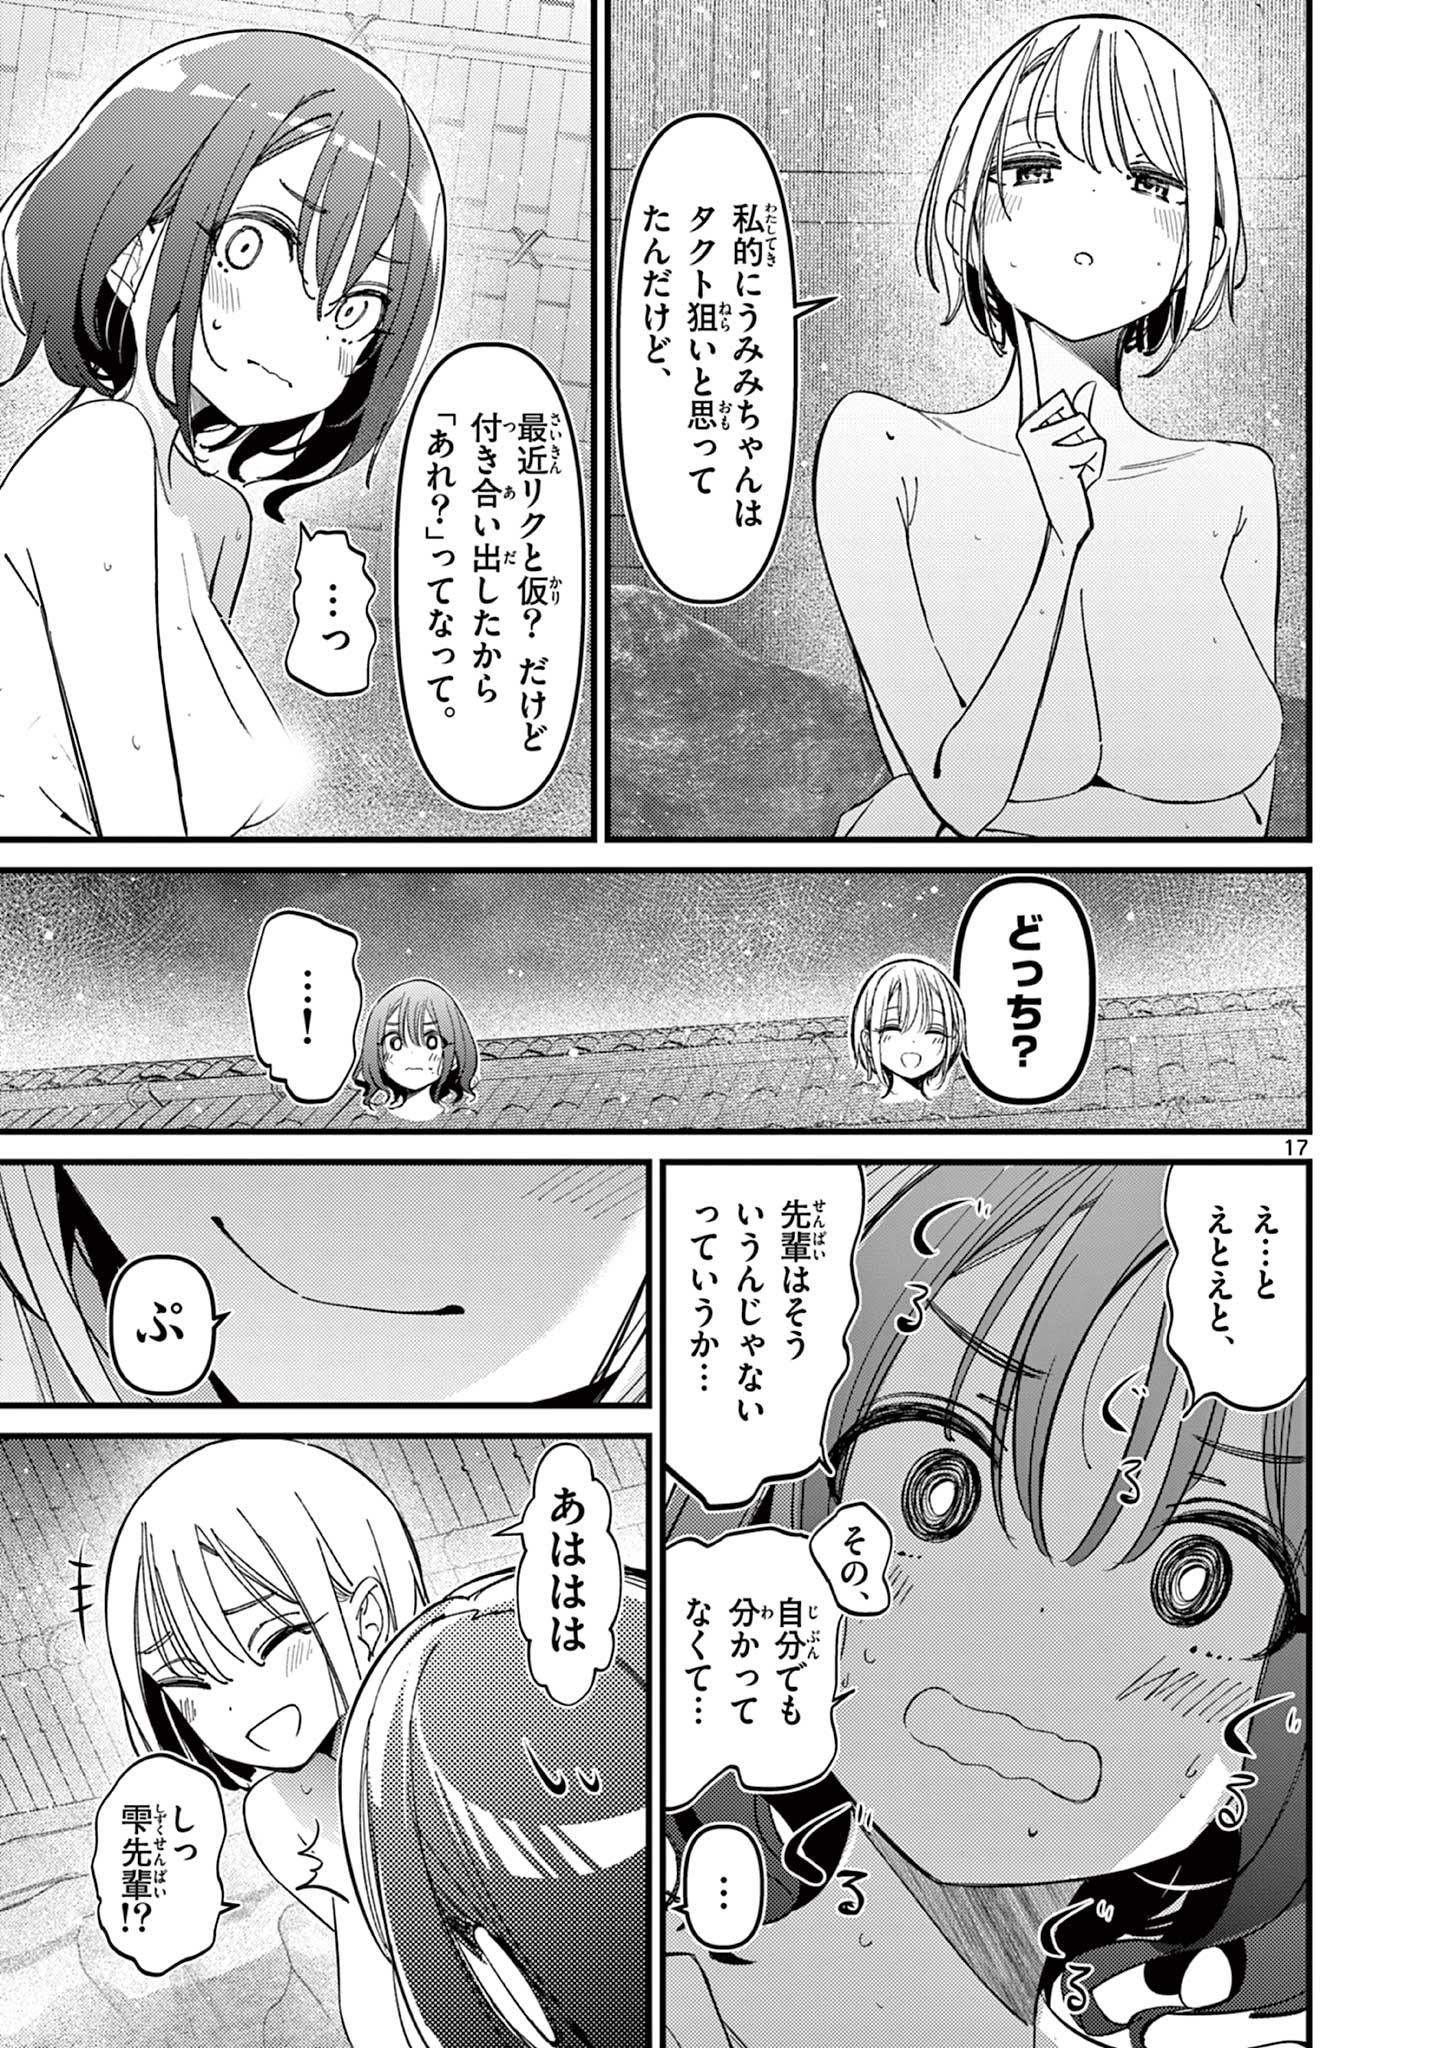 Aitsu no Kanojo - Chapter 29 - Page 17